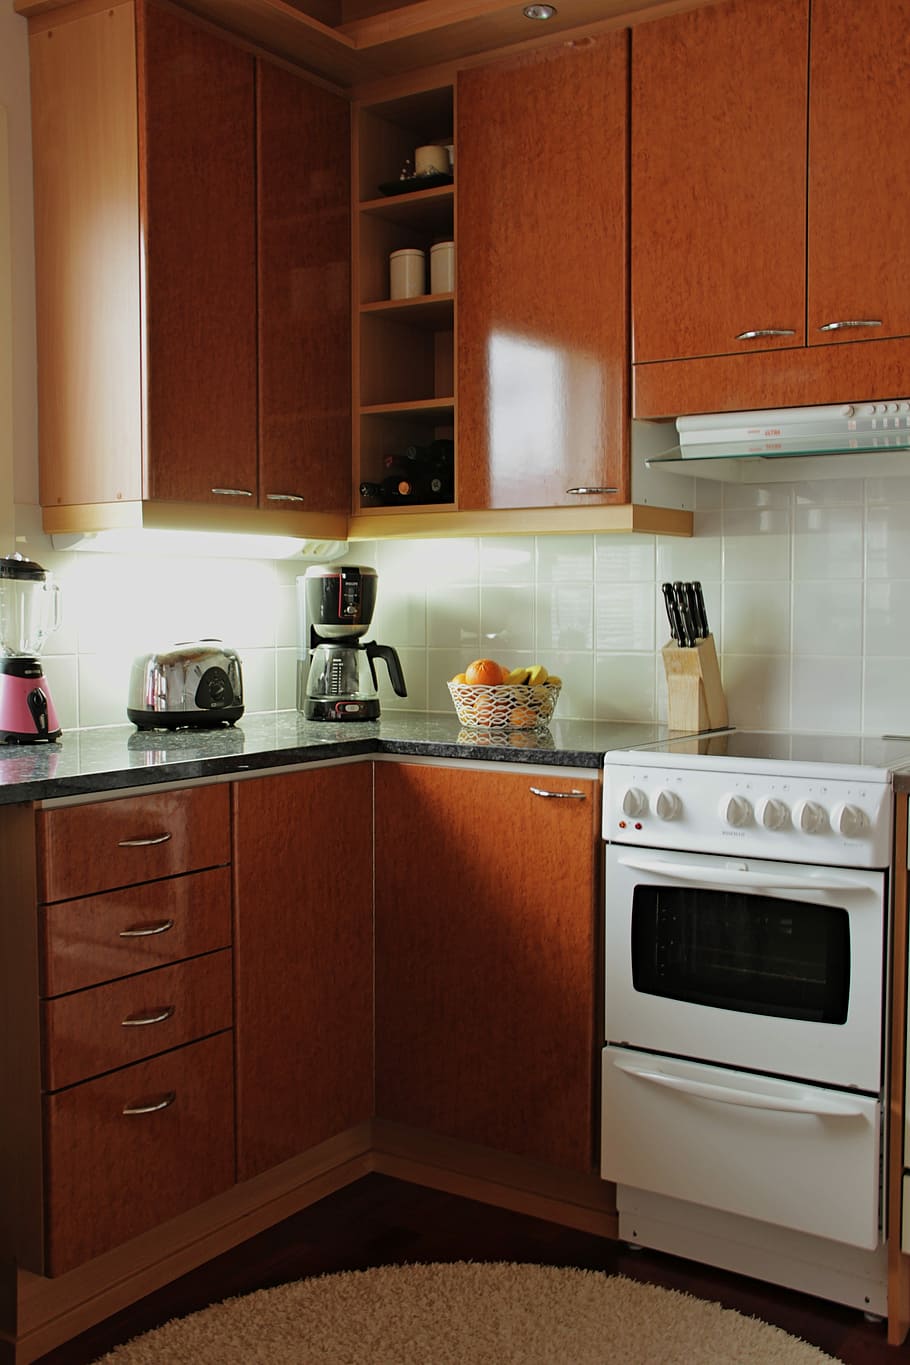 Cocina, utensilio de cocina, estufa, esquina, sala doméstica, cocina doméstica, encimera, mueble, horno, habitación doméstica